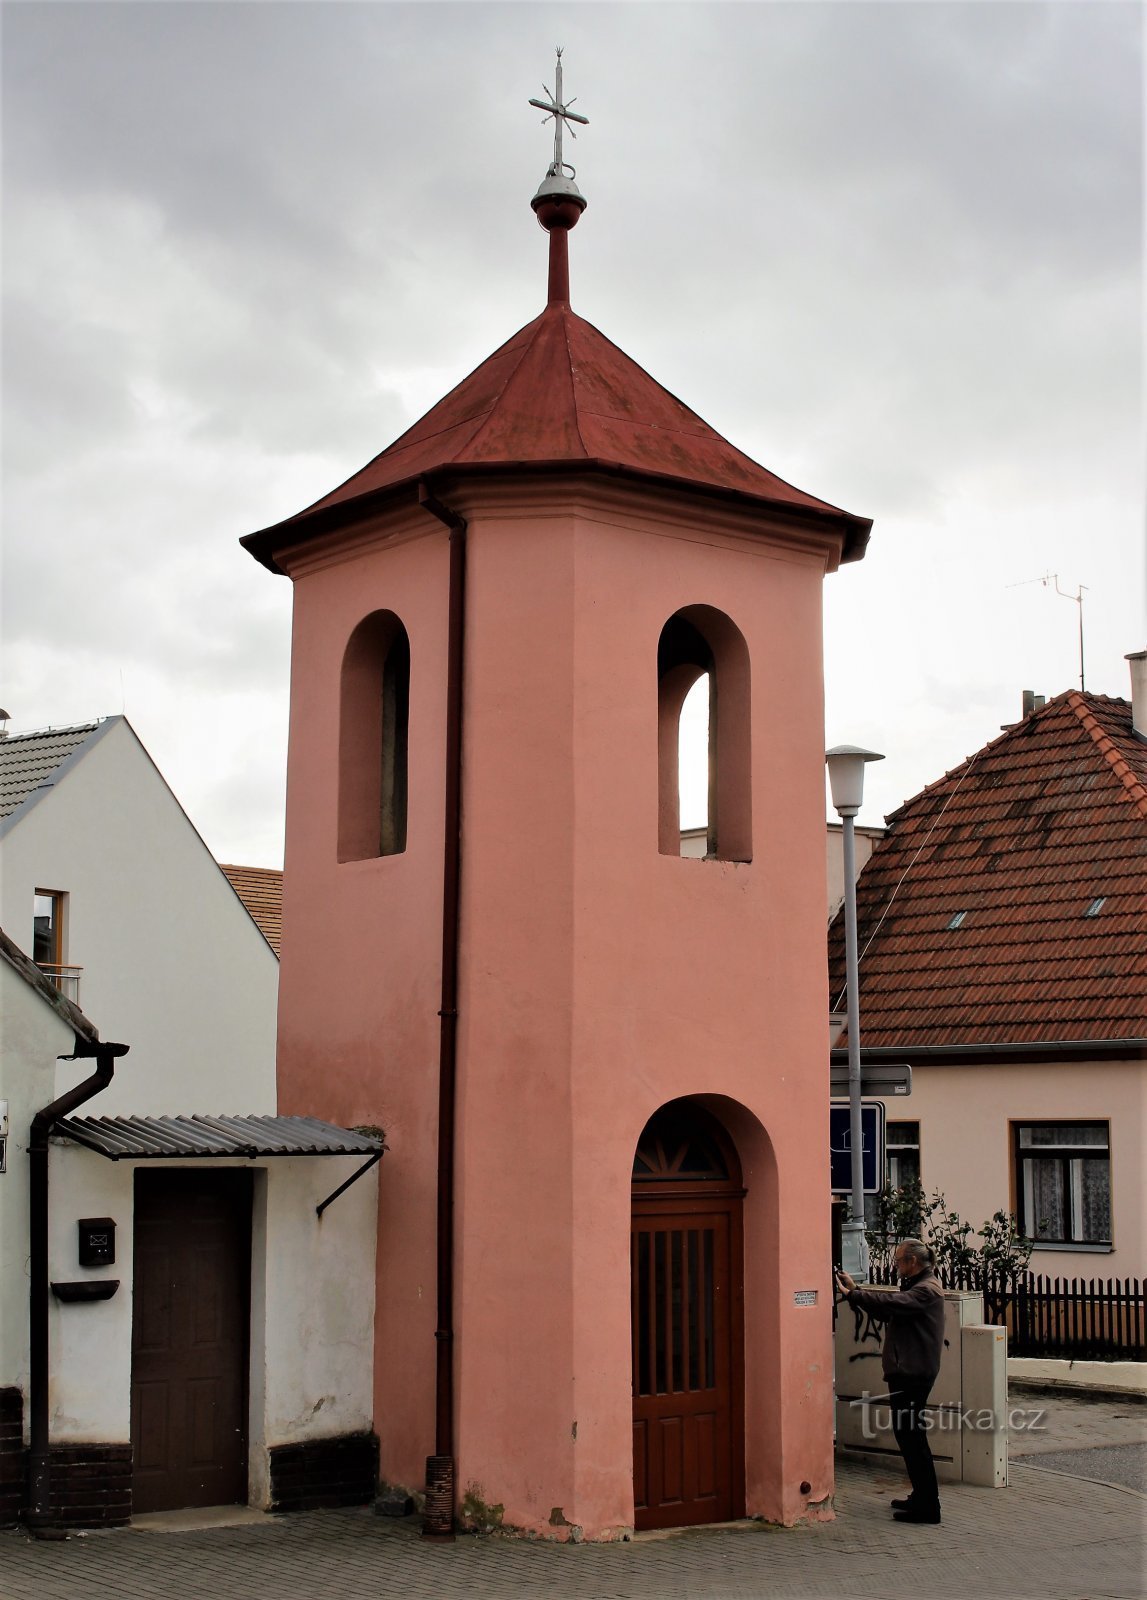 Brno-Medlánky - bell tower